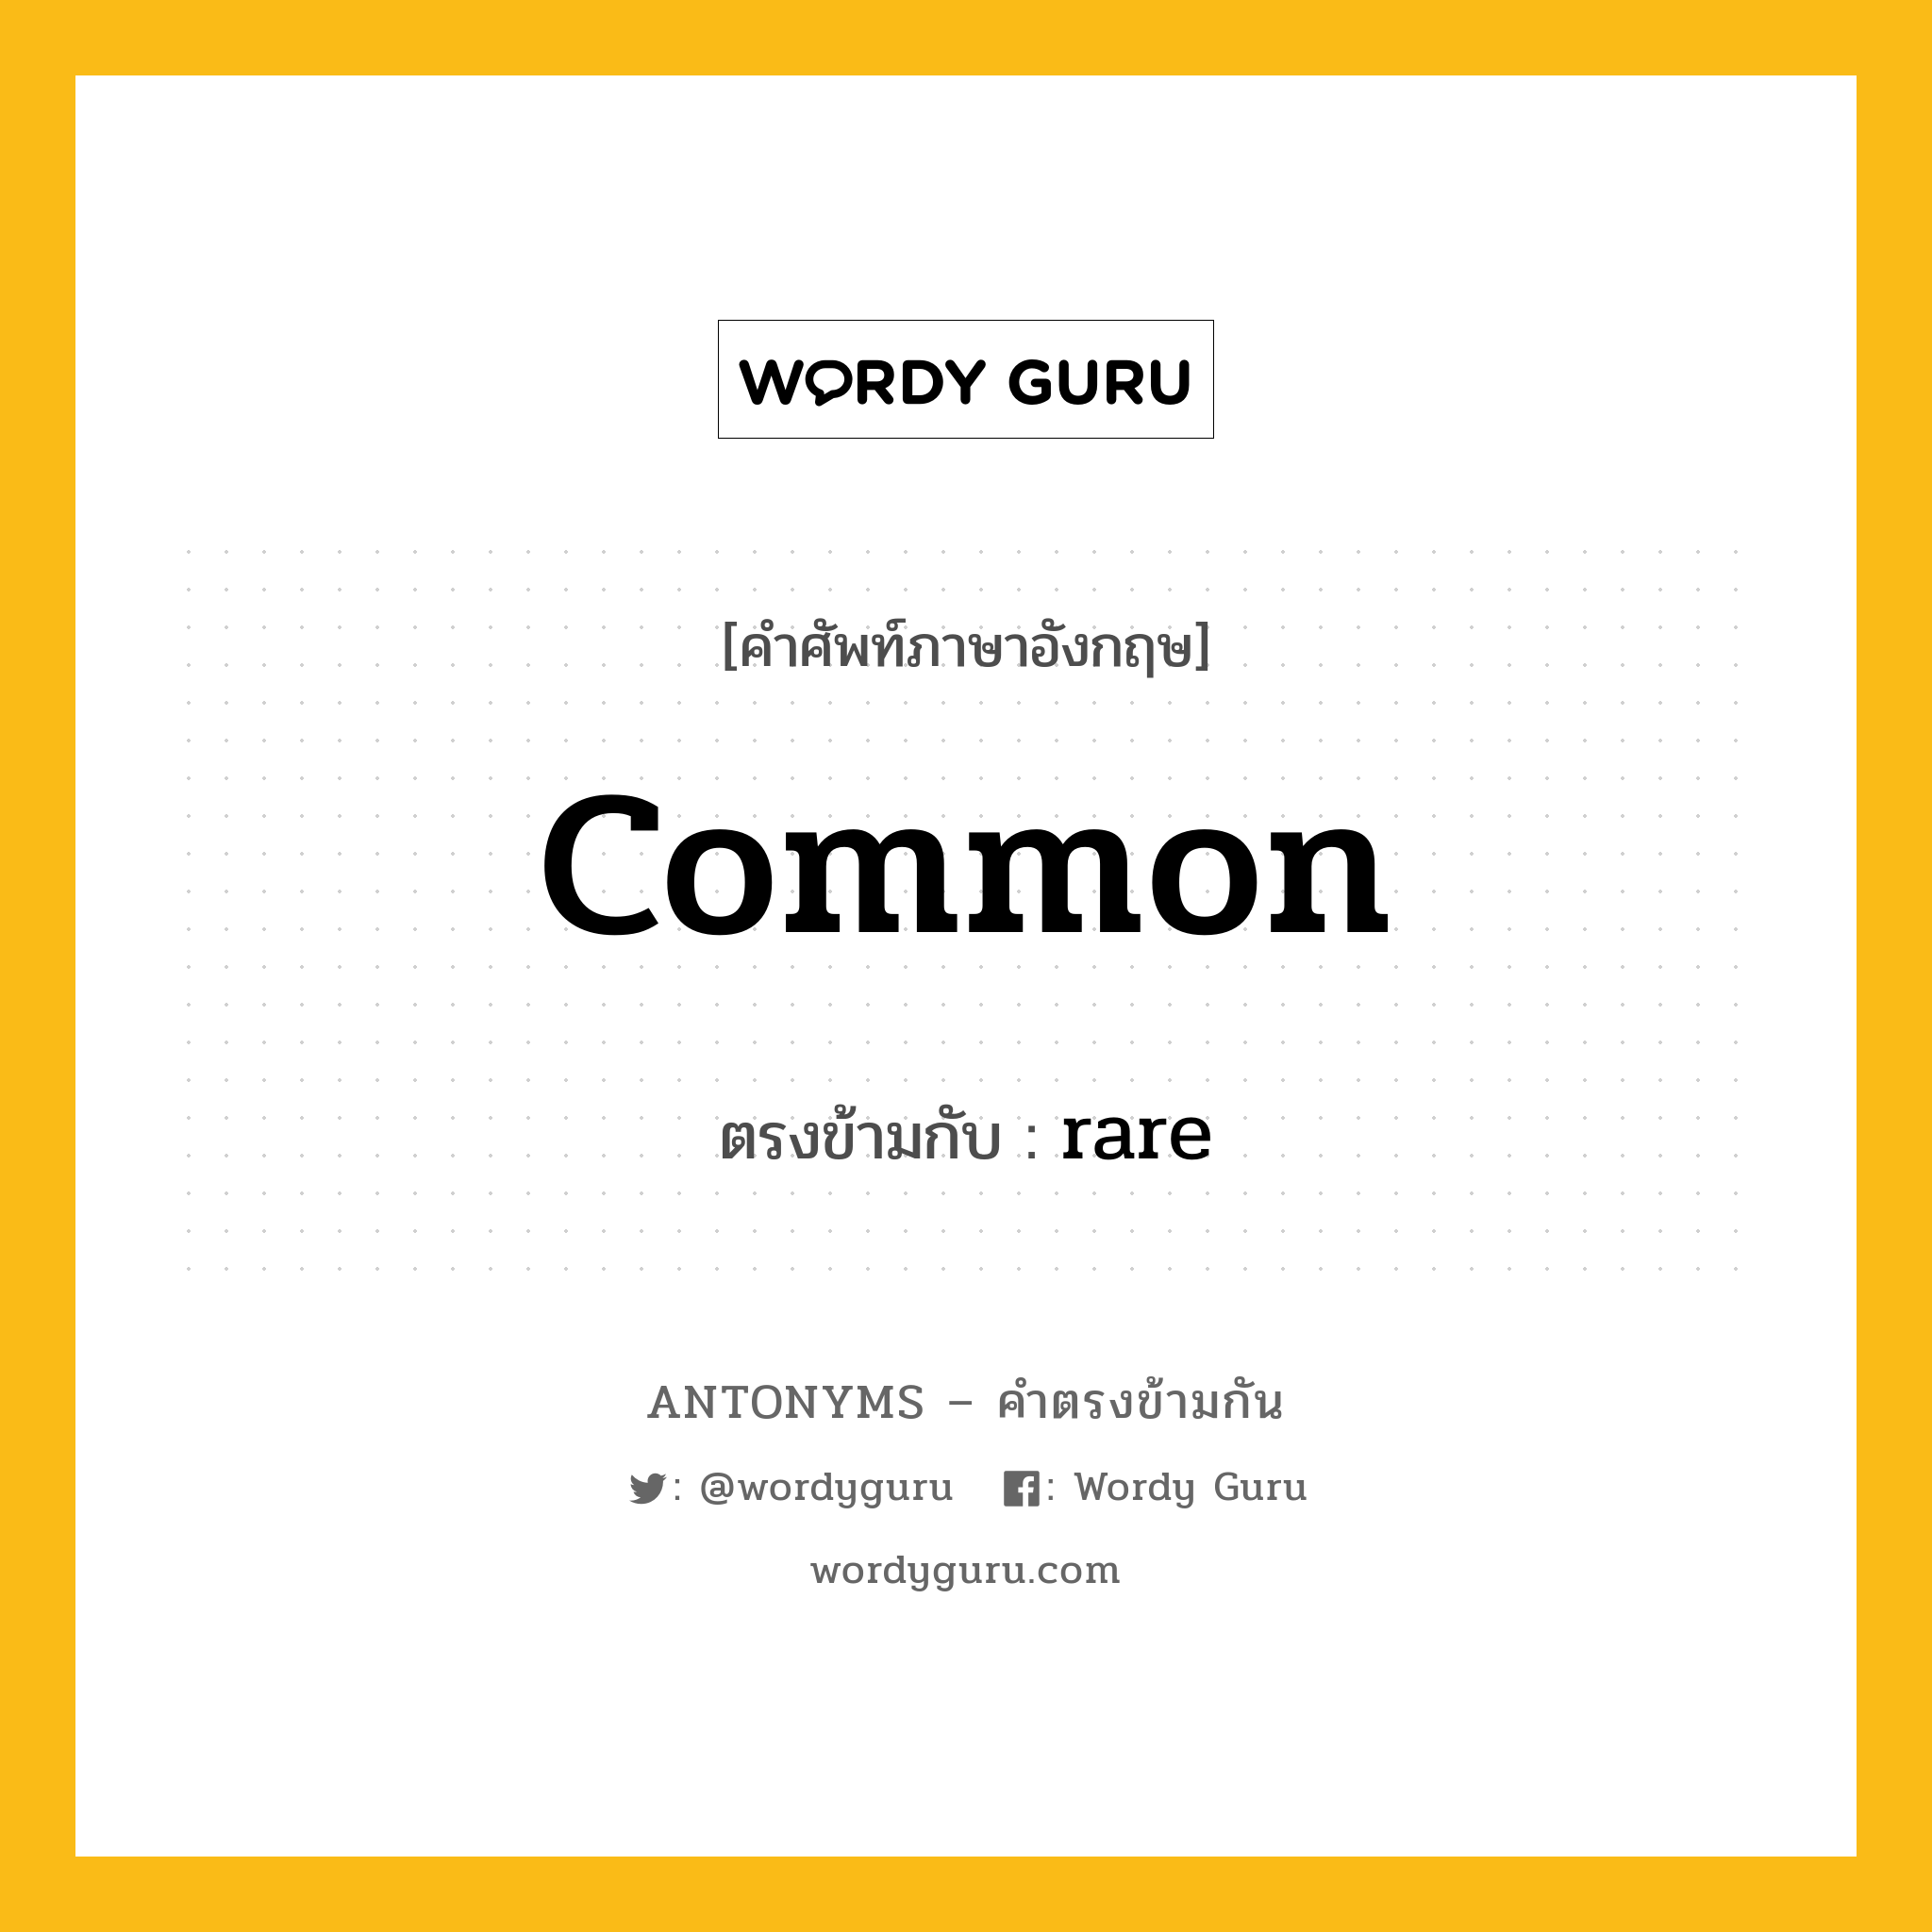 common เป็นคำตรงข้ามกับคำไหนบ้าง?, คำศัพท์ภาษาอังกฤษ common ตรงข้ามกับ rare หมวด rare